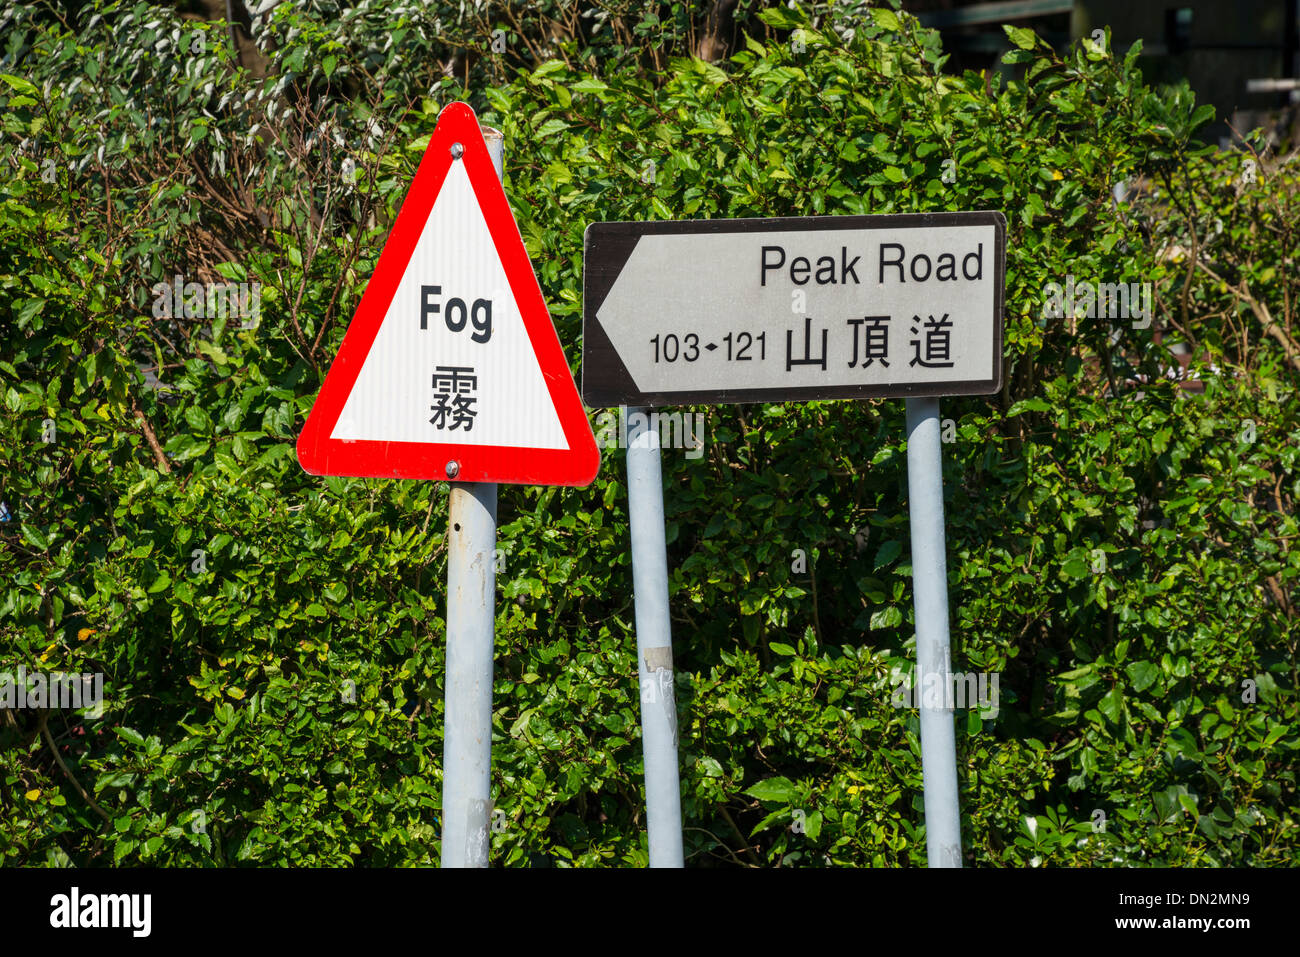 Signs, Peak Road, Hong Kong Stock Photo